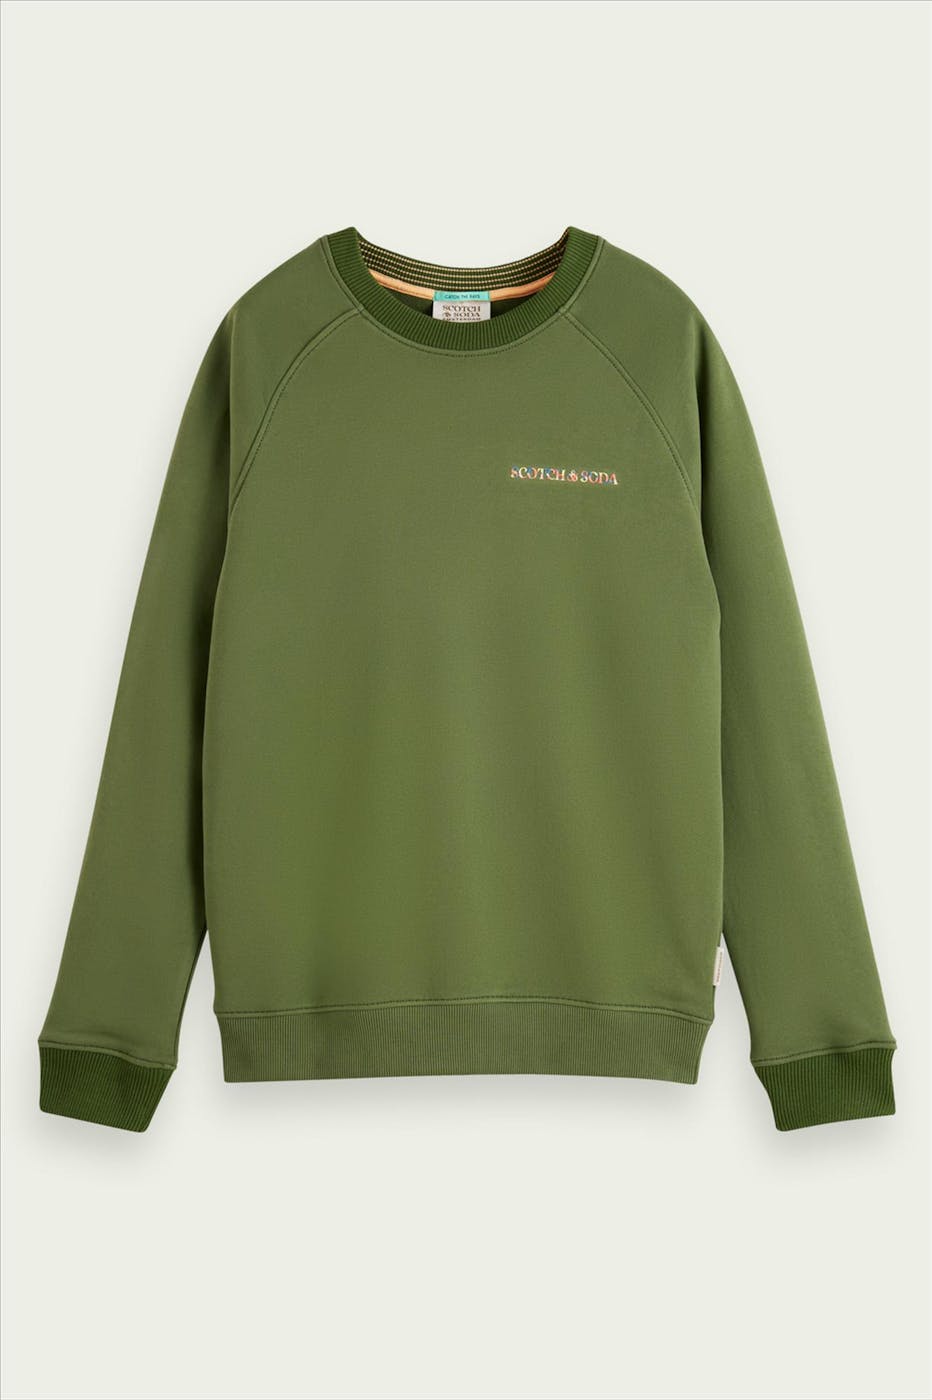 Scotch & Soda - Khaki- groene Sweater met kleurrijk logo